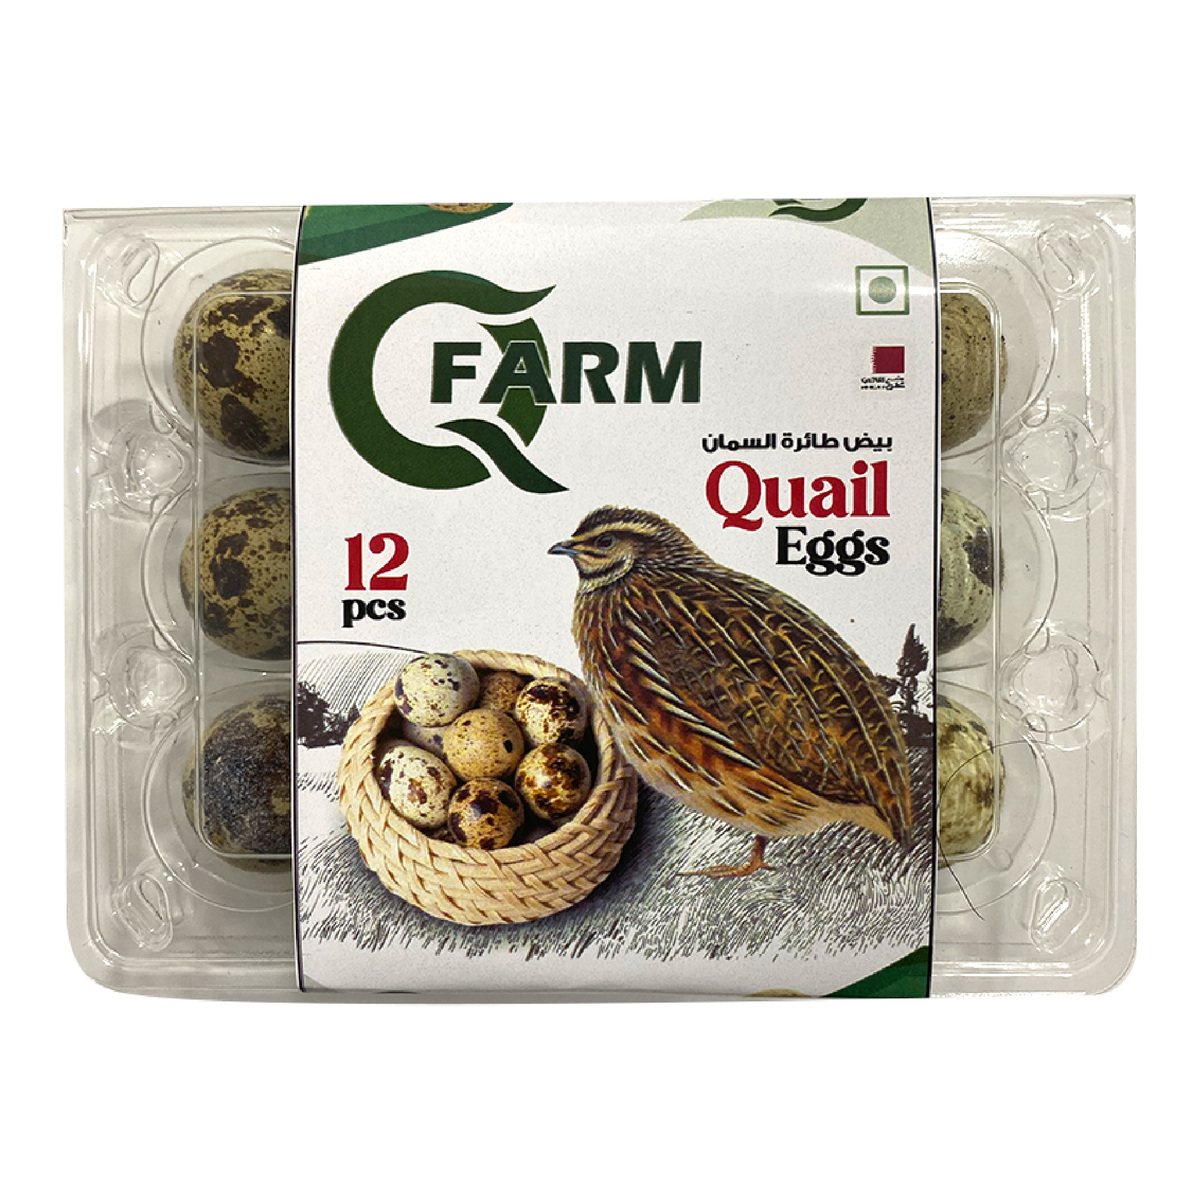 Q Farm Quail Eggs 12 pcs